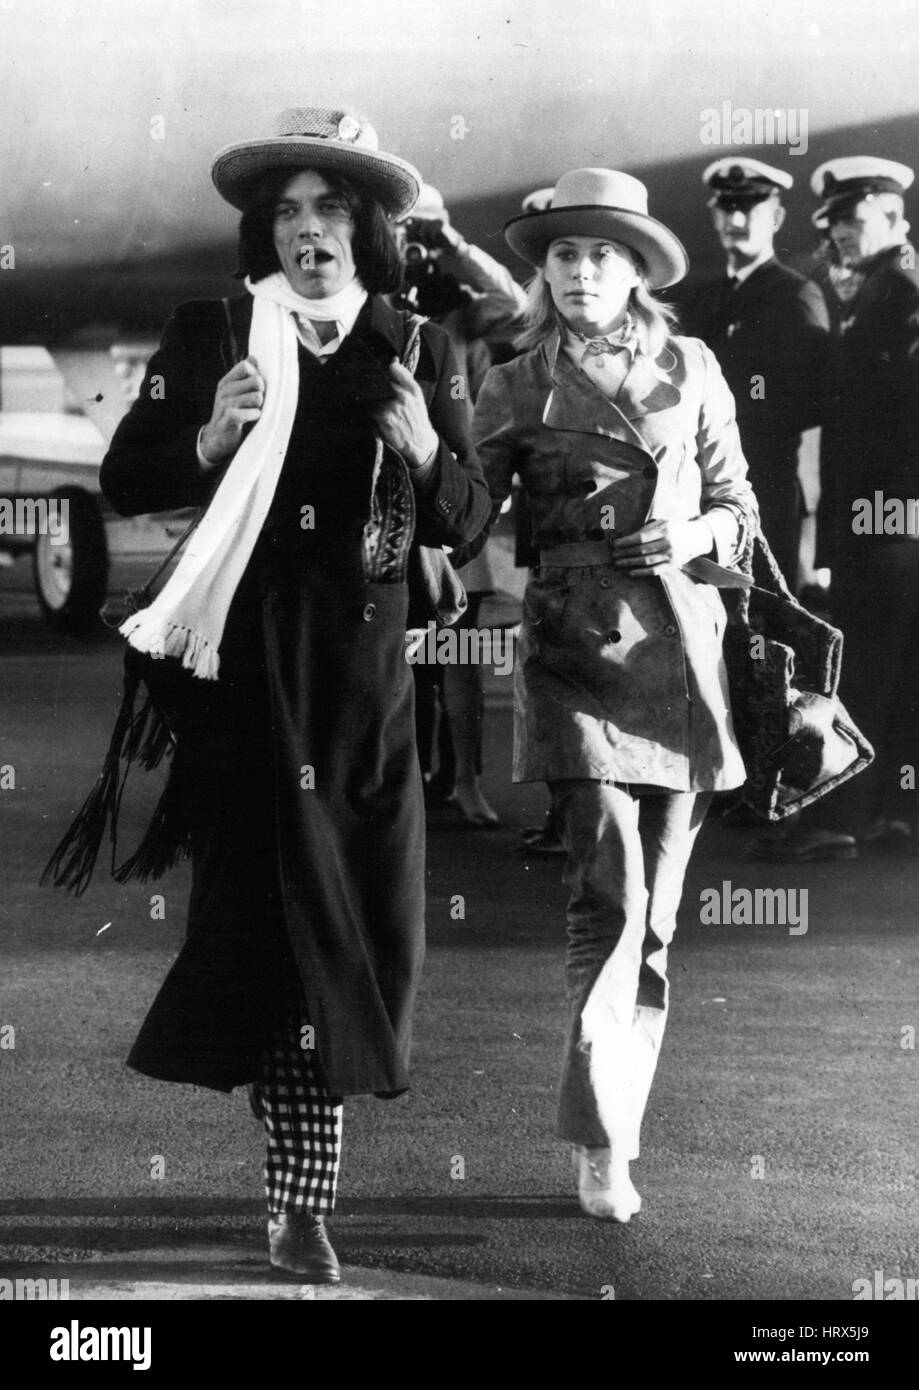 Juillet 08, 1969 - Juillet 8th, 1969 Mick Jagger à Sydney Ã¢â€" Rolling Stone Mick Jagger, le port de sortie, un maxi-manteau marron longueur en damier noir et blanc sur un pantalon évasé, un foulard Isadora blanc autour du cou, un chapeau de paille, champ noir, bottes en cuir italien et les sac à main sur son épaule, photographié lorsqu'il est arrivé à l'aéroport de Sydney, accompagné de sa petite amie Marianne Faithfull. Jagger est arrivé à jouer le rôle du film de l'countryÃ¢â€ hors-héros populaire, Ned Kelly. (Crédit Image : © Keystone Press Agency/Keystone USA par ZUMAPRESS.com) Banque D'Images